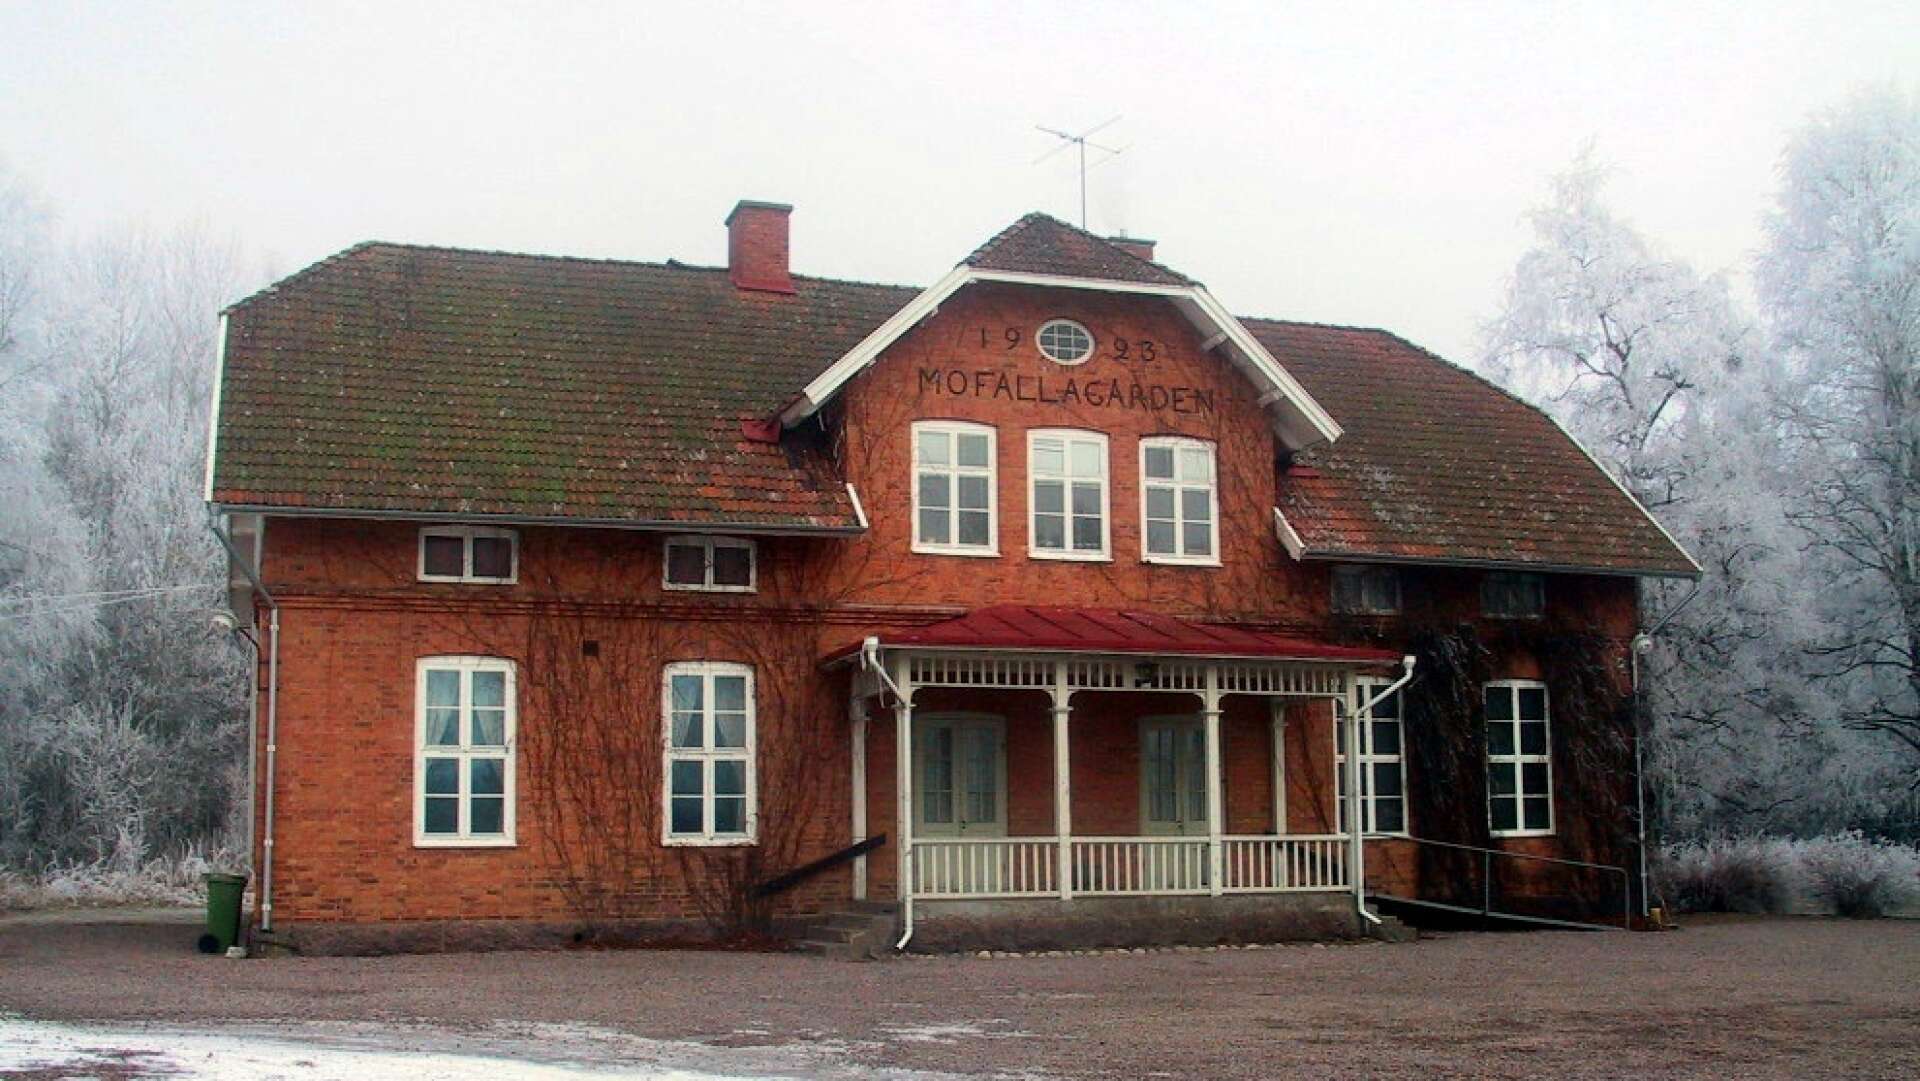 Mofallagården, ursprungligen en skolbyggnad ritad av Axel Jonsson och byggd 1925 har varit en del av Mofalla församling sedan 1967. Svenska kyrkan har nu sålt fastigheten till ett lokalt fastighetsbolag. 